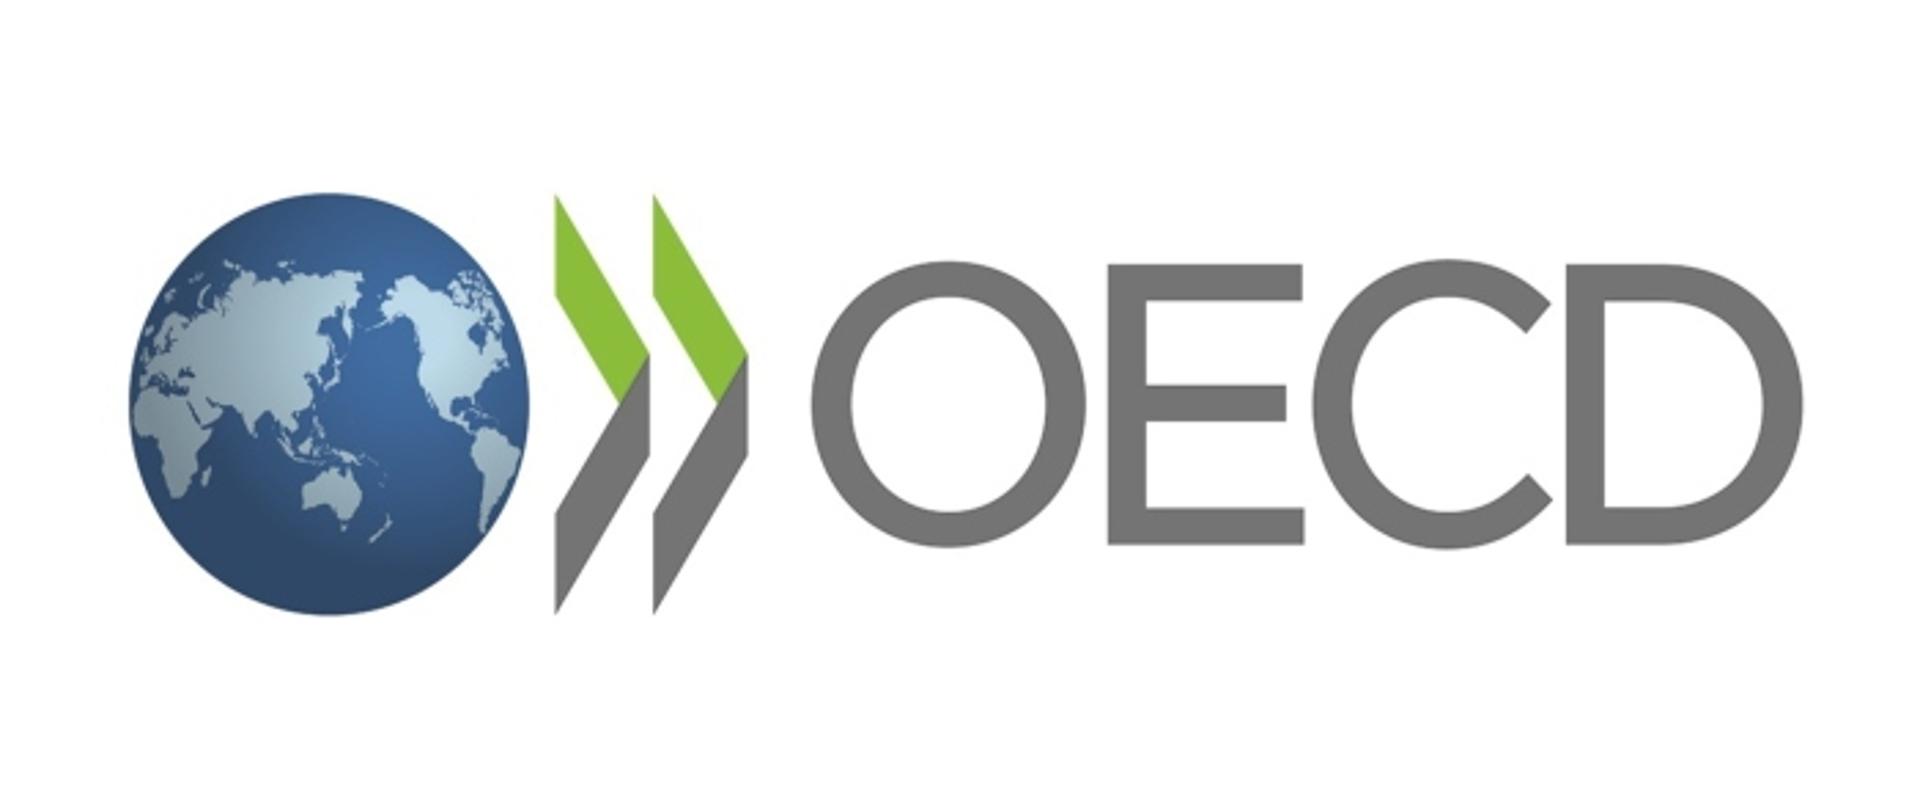 Logo OECD. Od lewej rysunek kuli ziemskiej w barwach błękitnych, kontynenty zaznaczone jaśniejszym odcieniem. Dalej w prawo dwa zielono-szare elementy graficzne, przypominające otwarte okładki książek, skierowane grzbietami w prawo. Dalej w prawo napis szarymi literami: OECD.